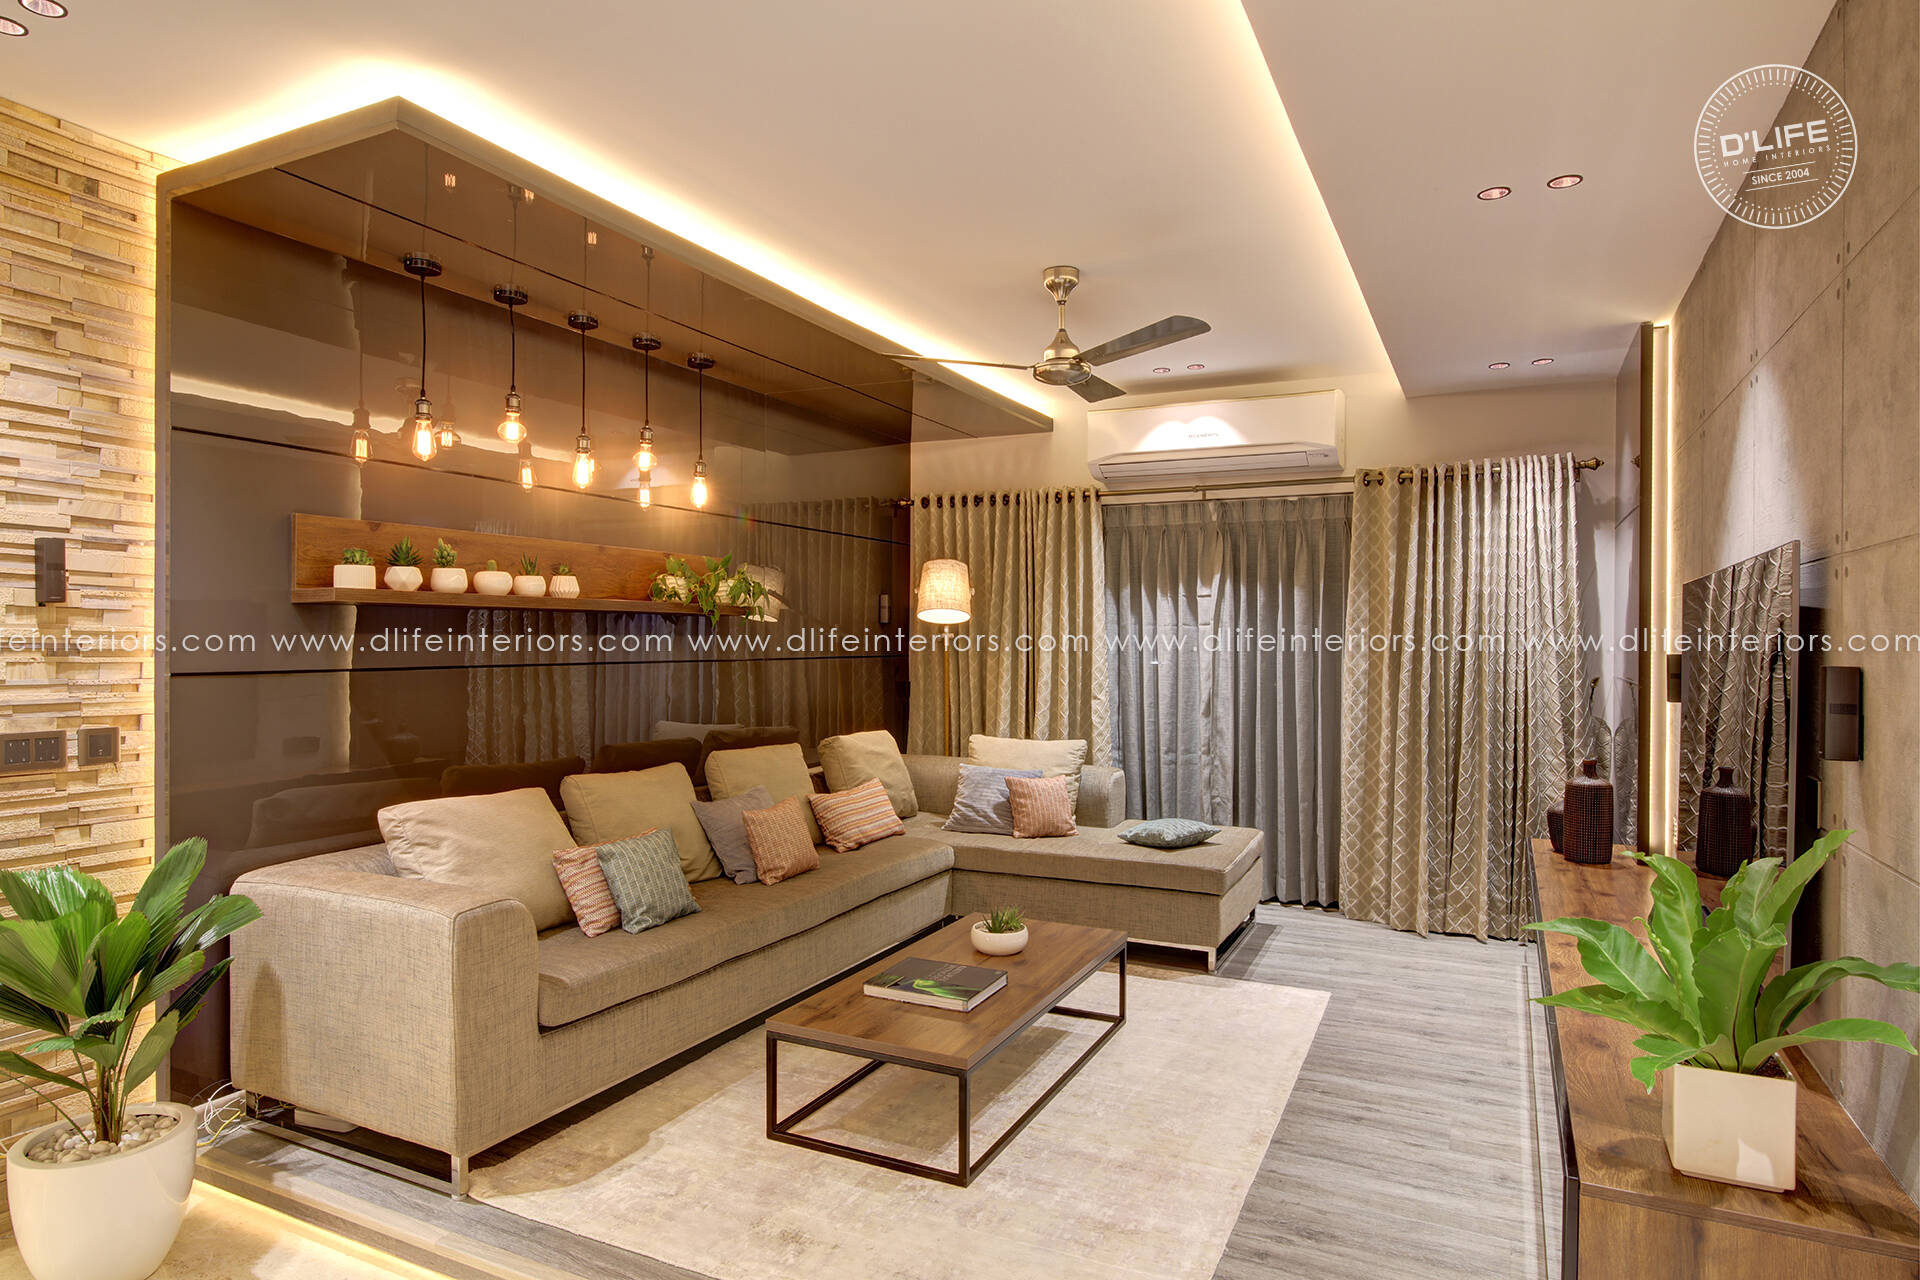 Best Home Interiors Company in Bengaluru | Yellow Tree Interiors |